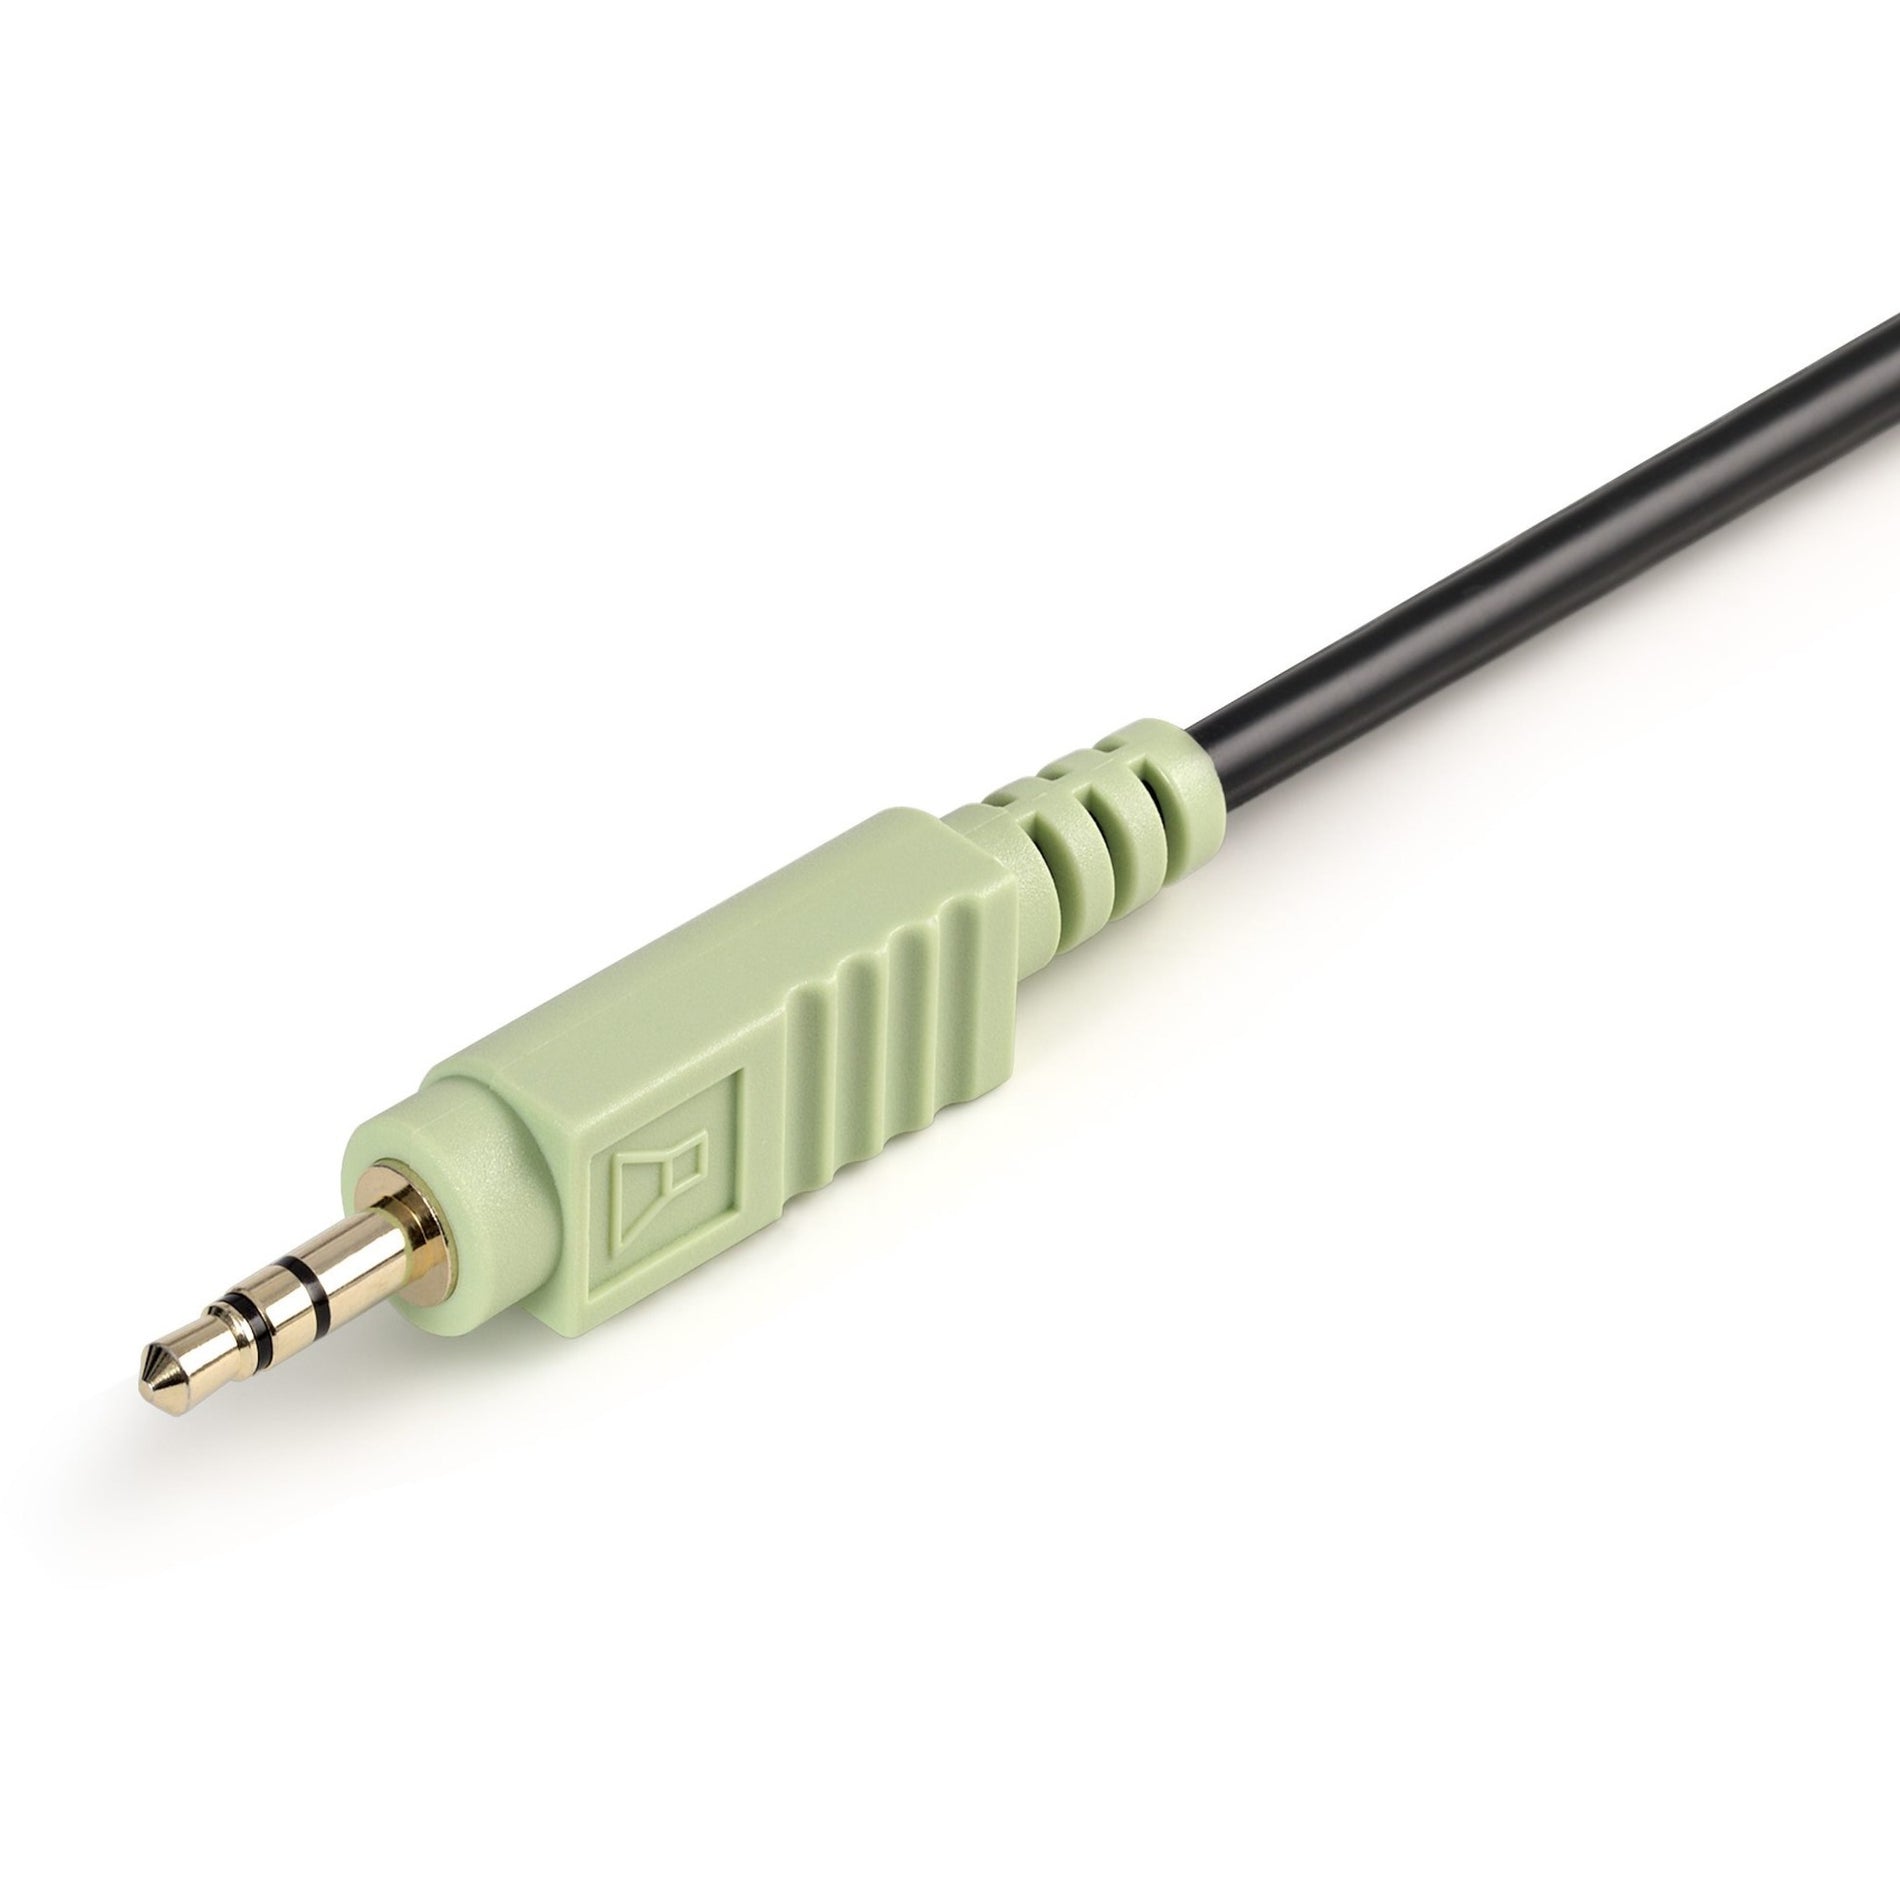 品牌：StarTech.com 产品名称：USBDVI4N1A10 10英尺4合1 USB DVI KVM 电缆与音频，铜导体，支持1920 x 1200分辨率，黑色